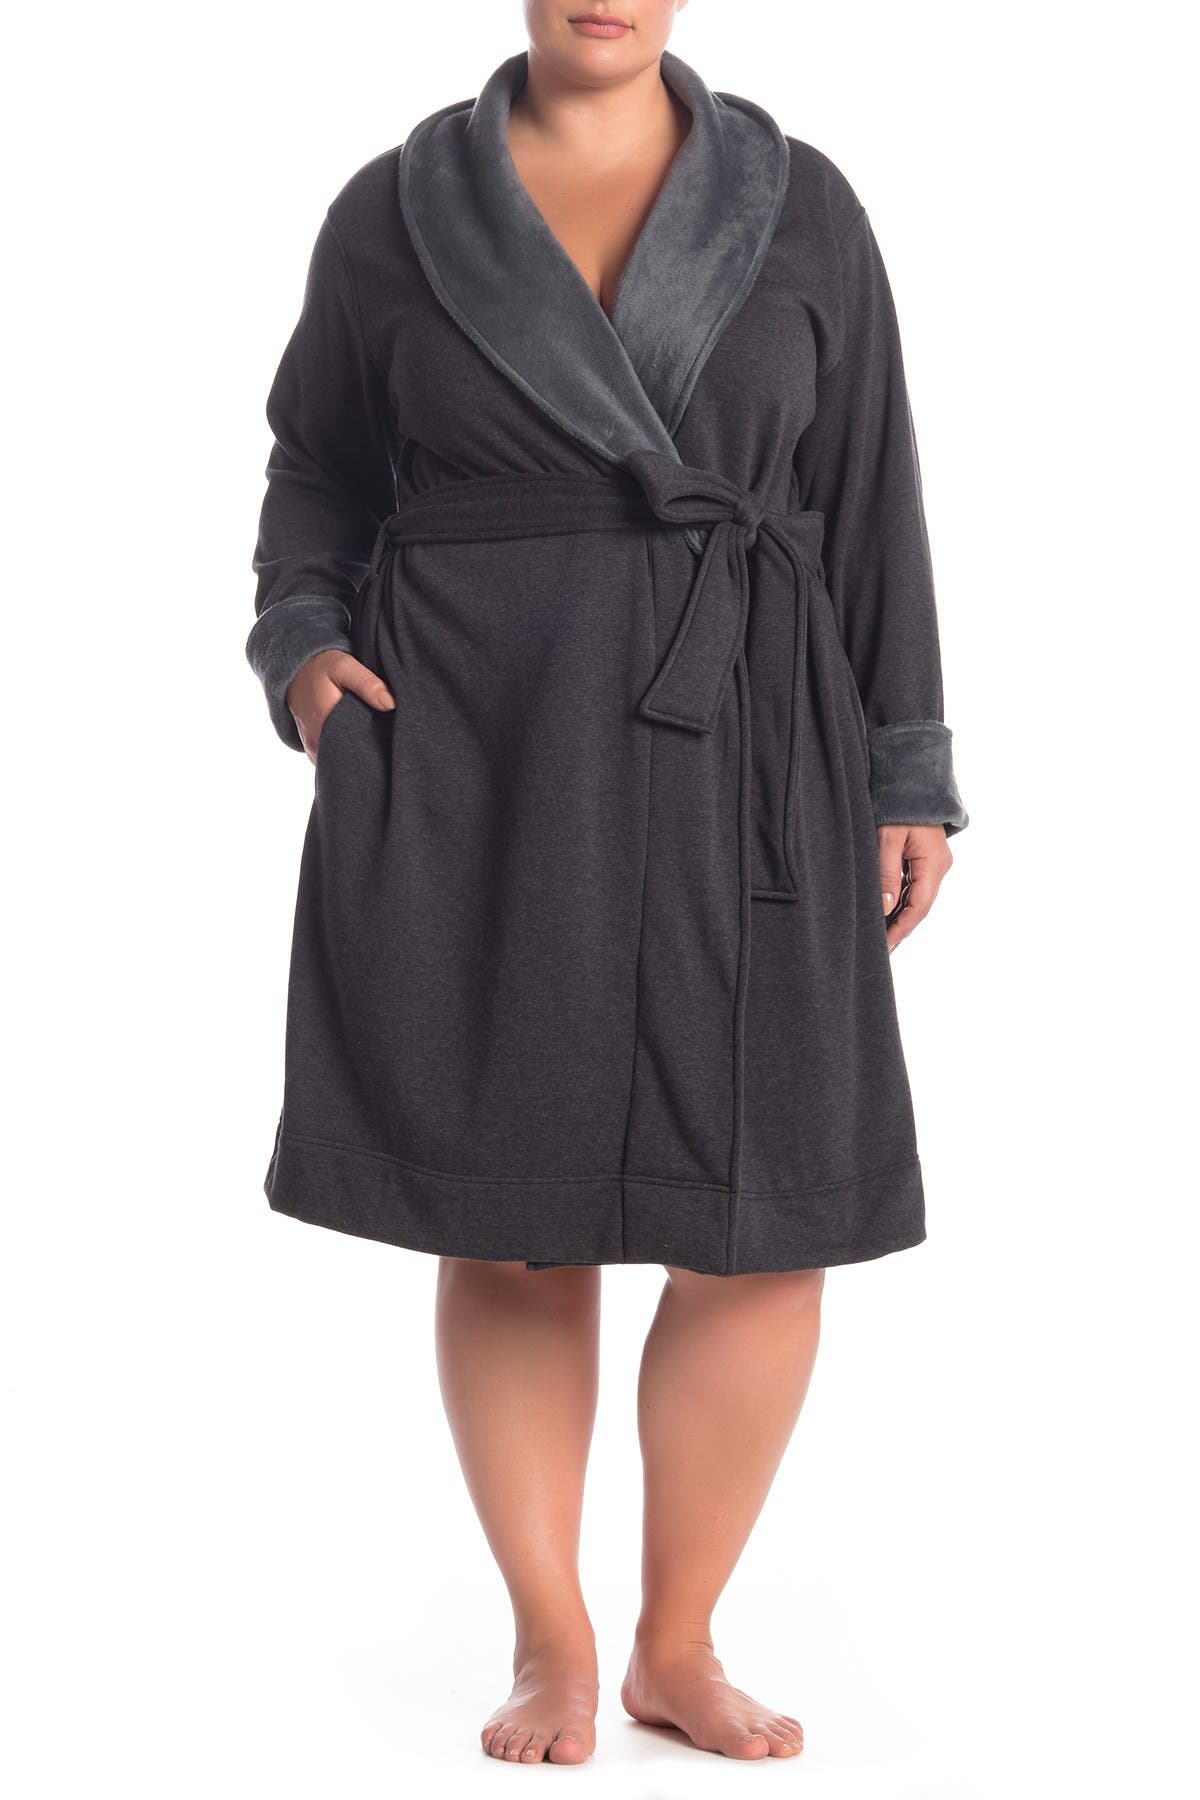 UGG | Blanche II Fleece Lined Robe 